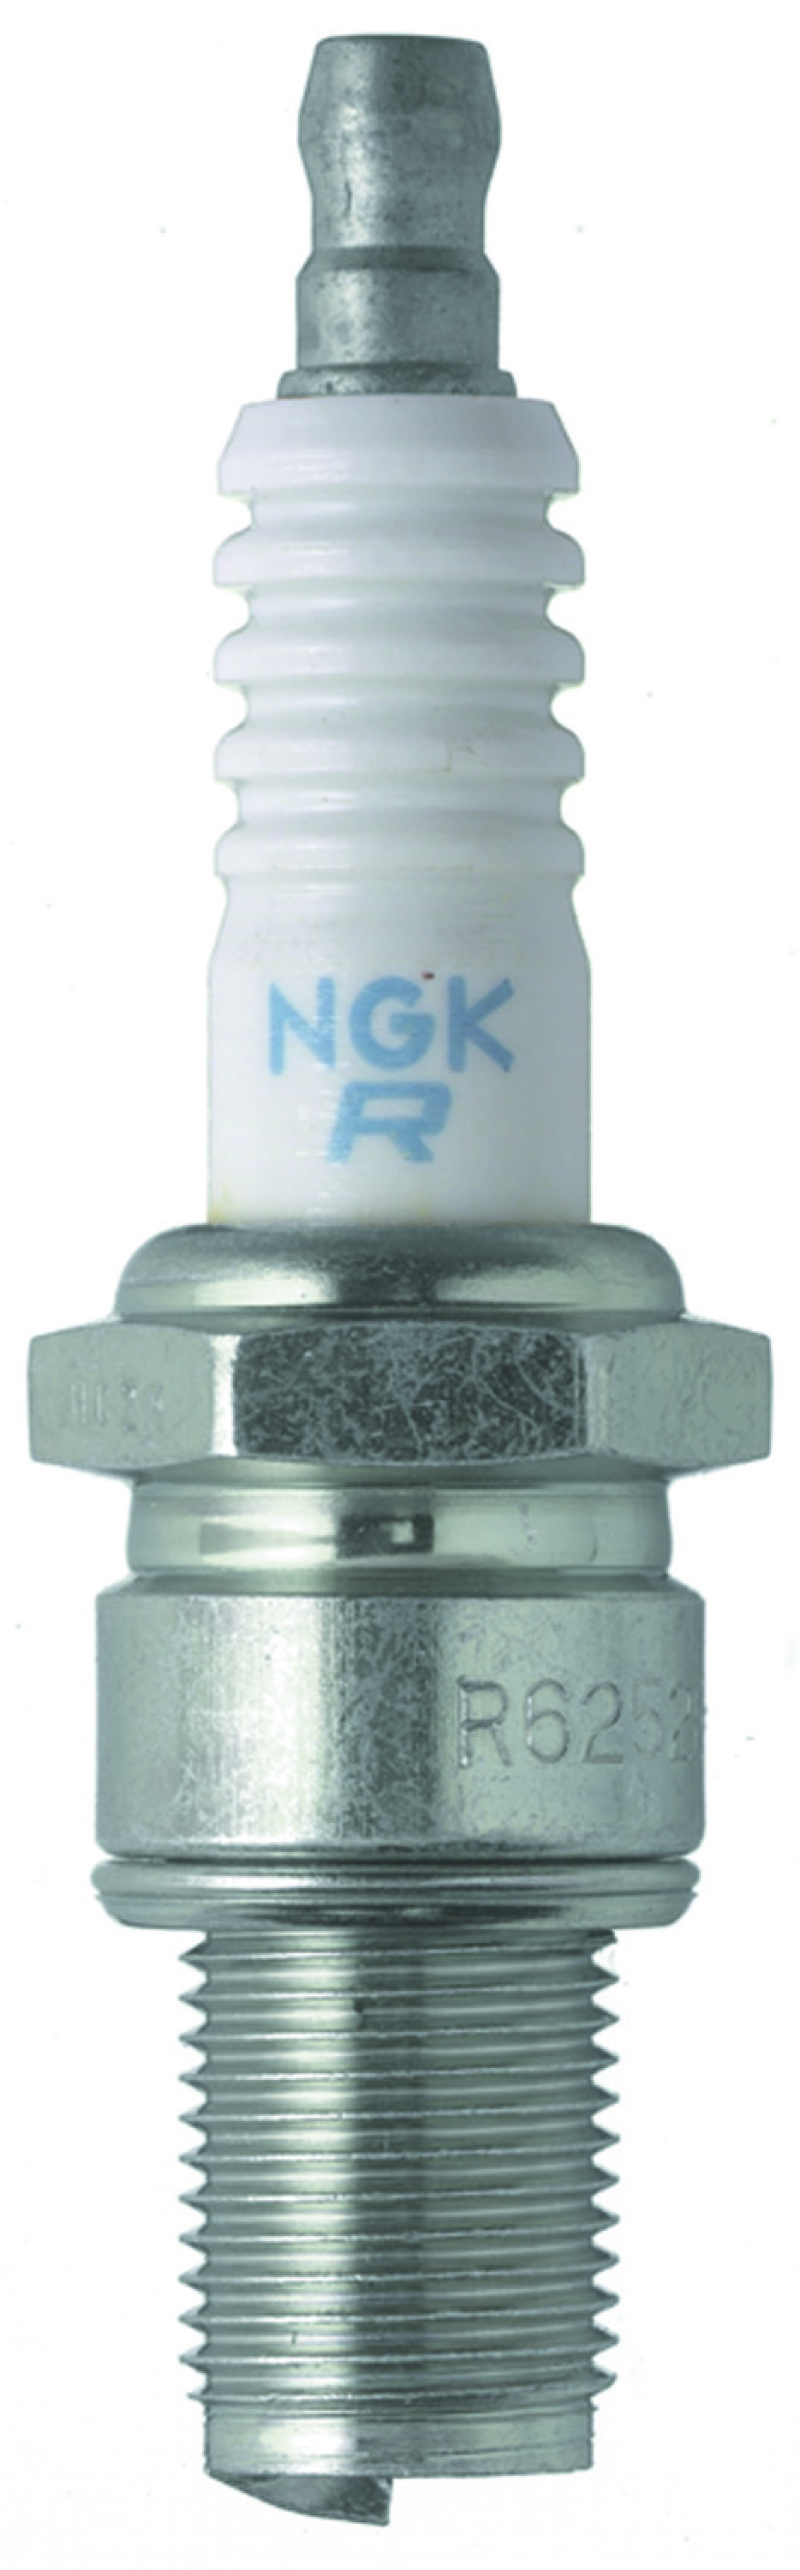 NGK Racing Spark Plug Box of 4 (R6918B-9) - 2954